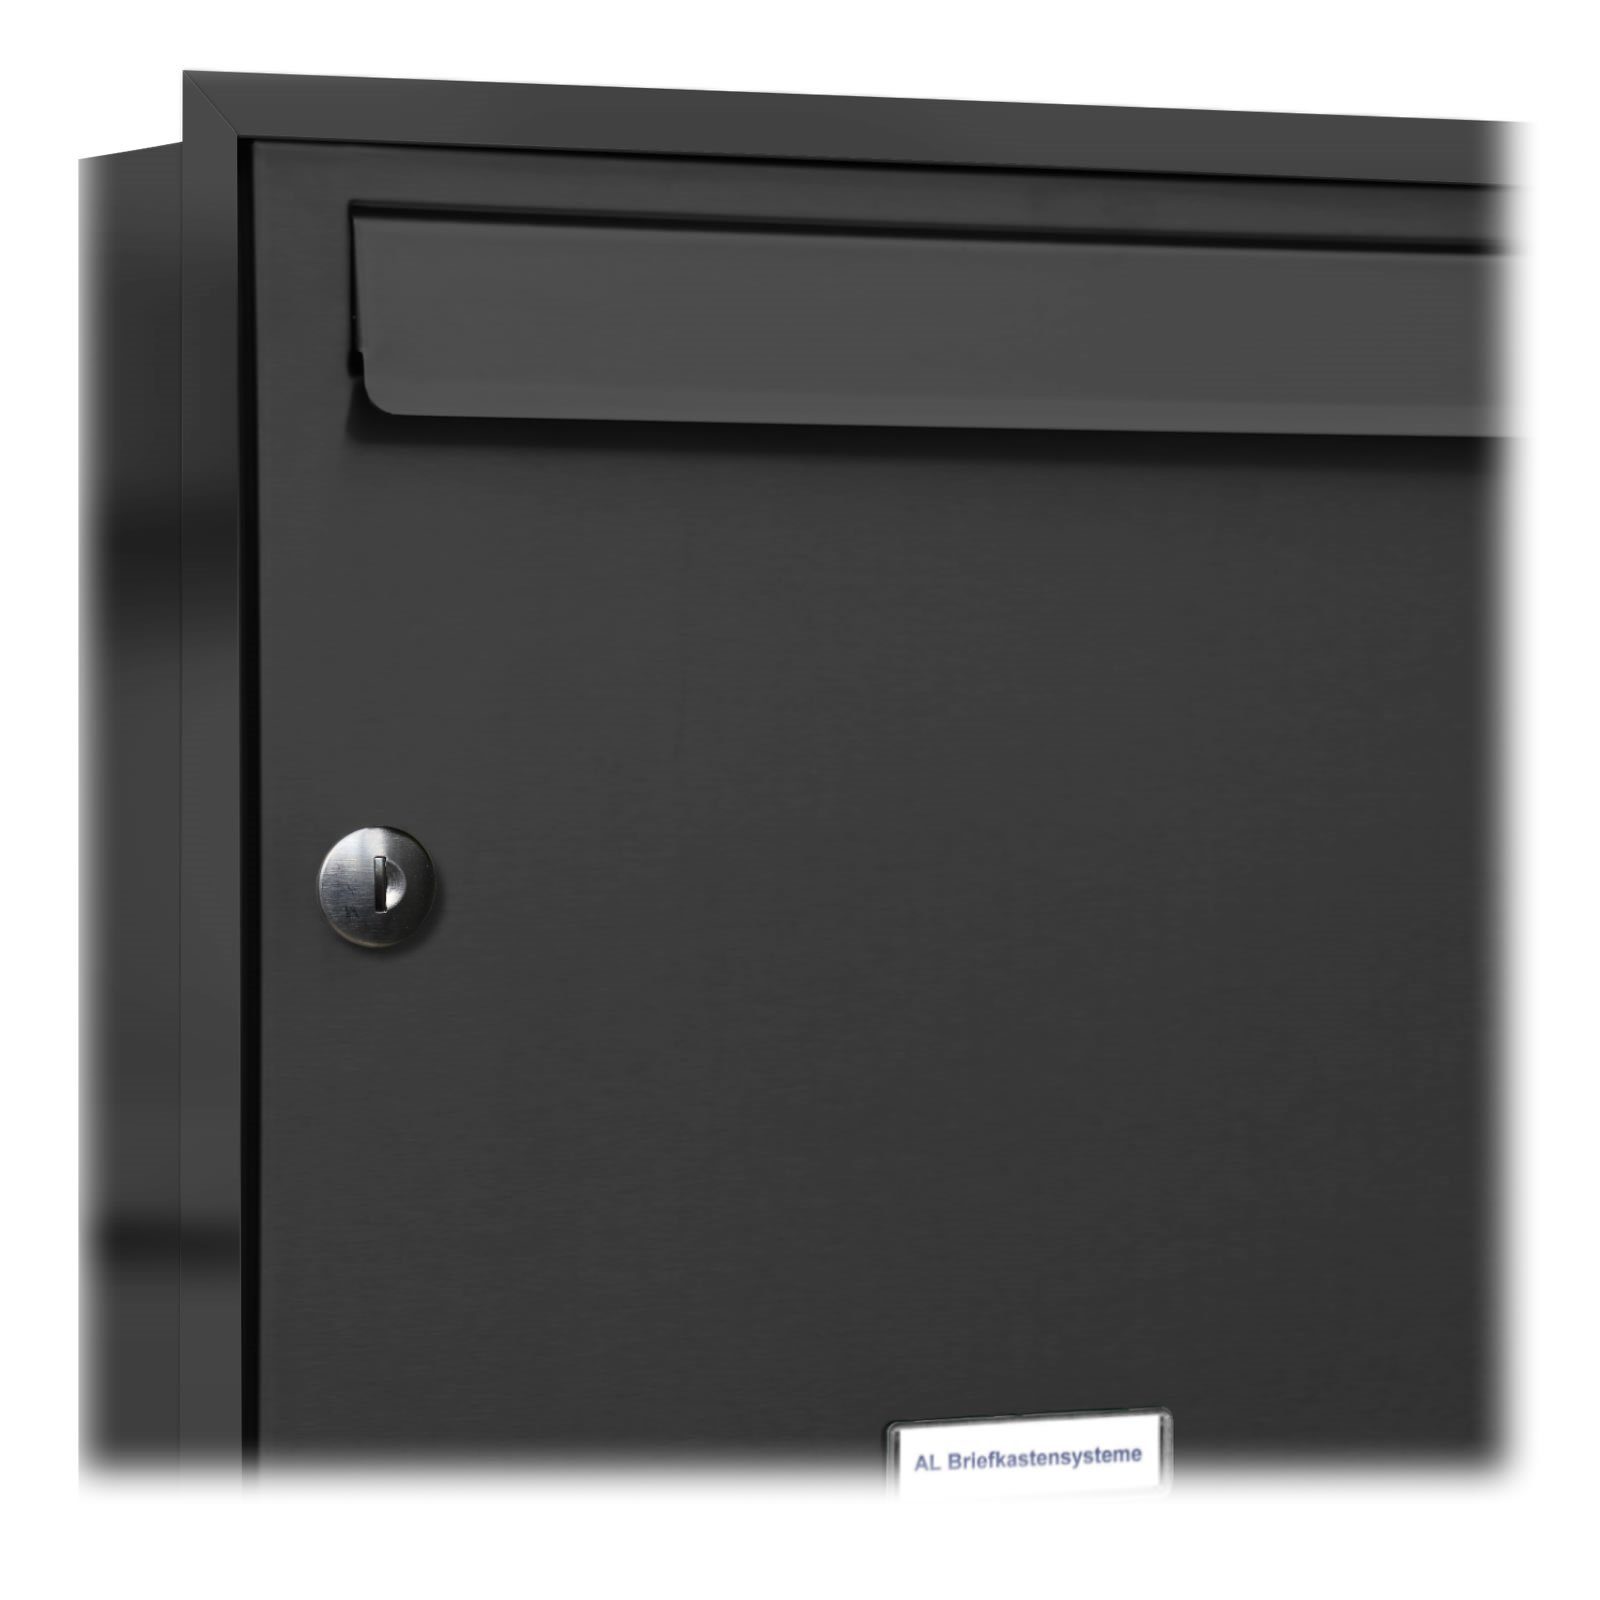 AL Briefkastensysteme Wandbriefkasten Klingel Anthrazit Fach mit 5 Unterputz Premium 3x2 5er Briefkasten